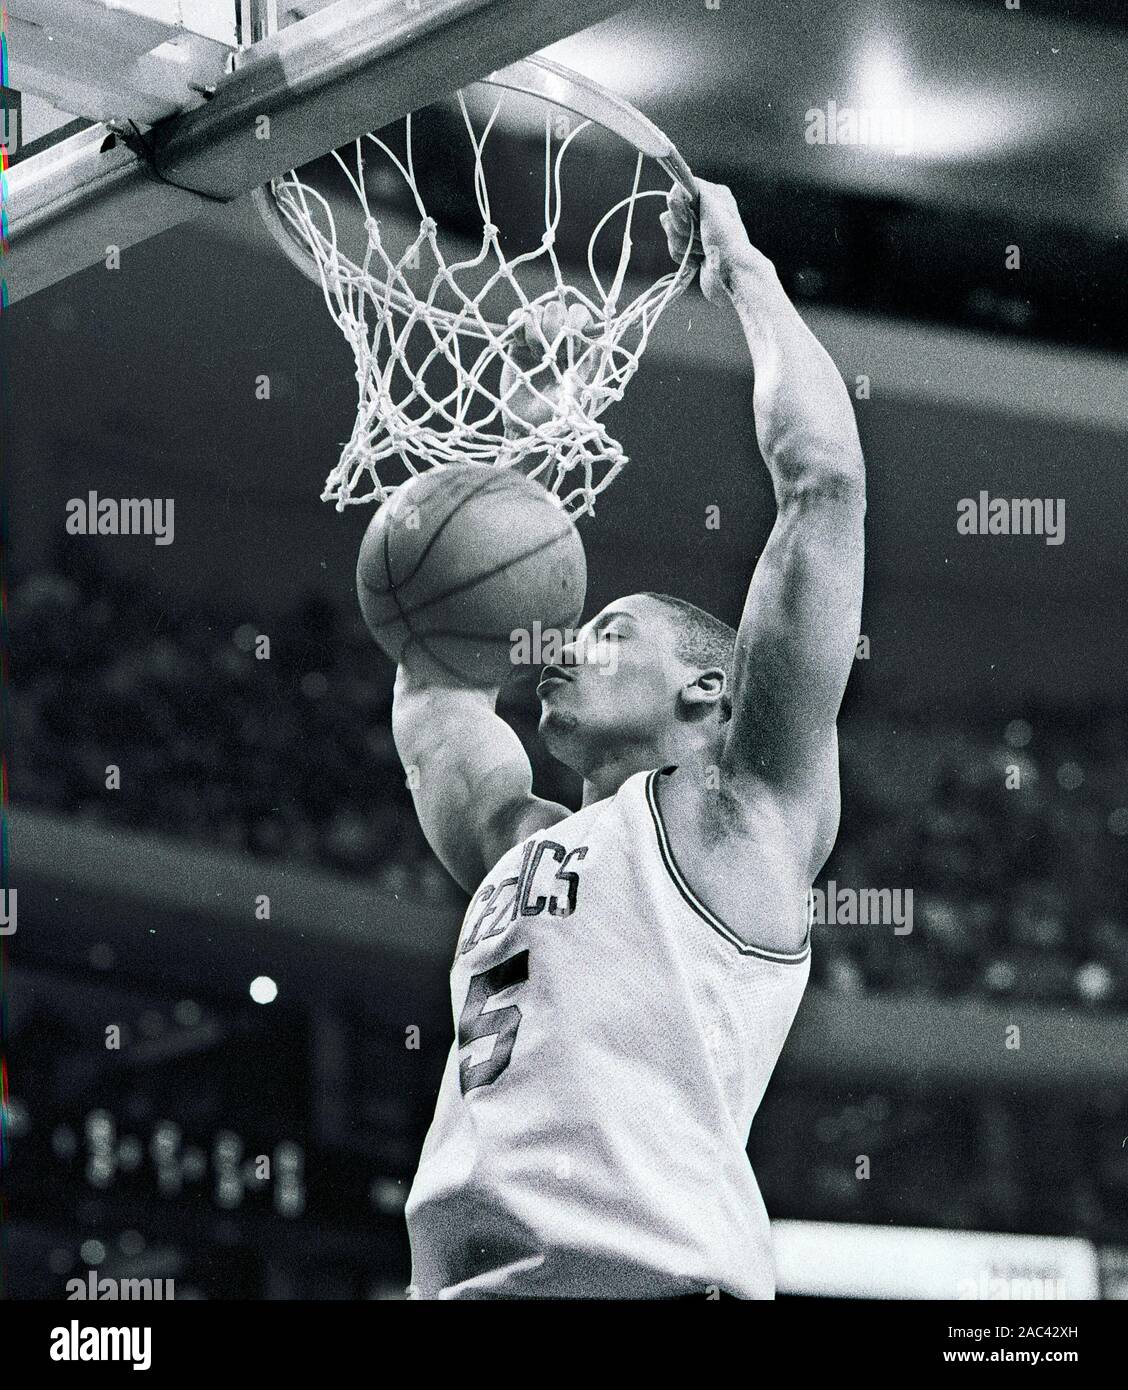 "Sweet Dunk" Boston Celtics #5 Junior Burrough die Kugel dunks während Basketball Spiel gegen die Vancouver Grizzlies am Fleet Center in Boston, Ma USA 1996 Foto von Bill belknap Stockfoto